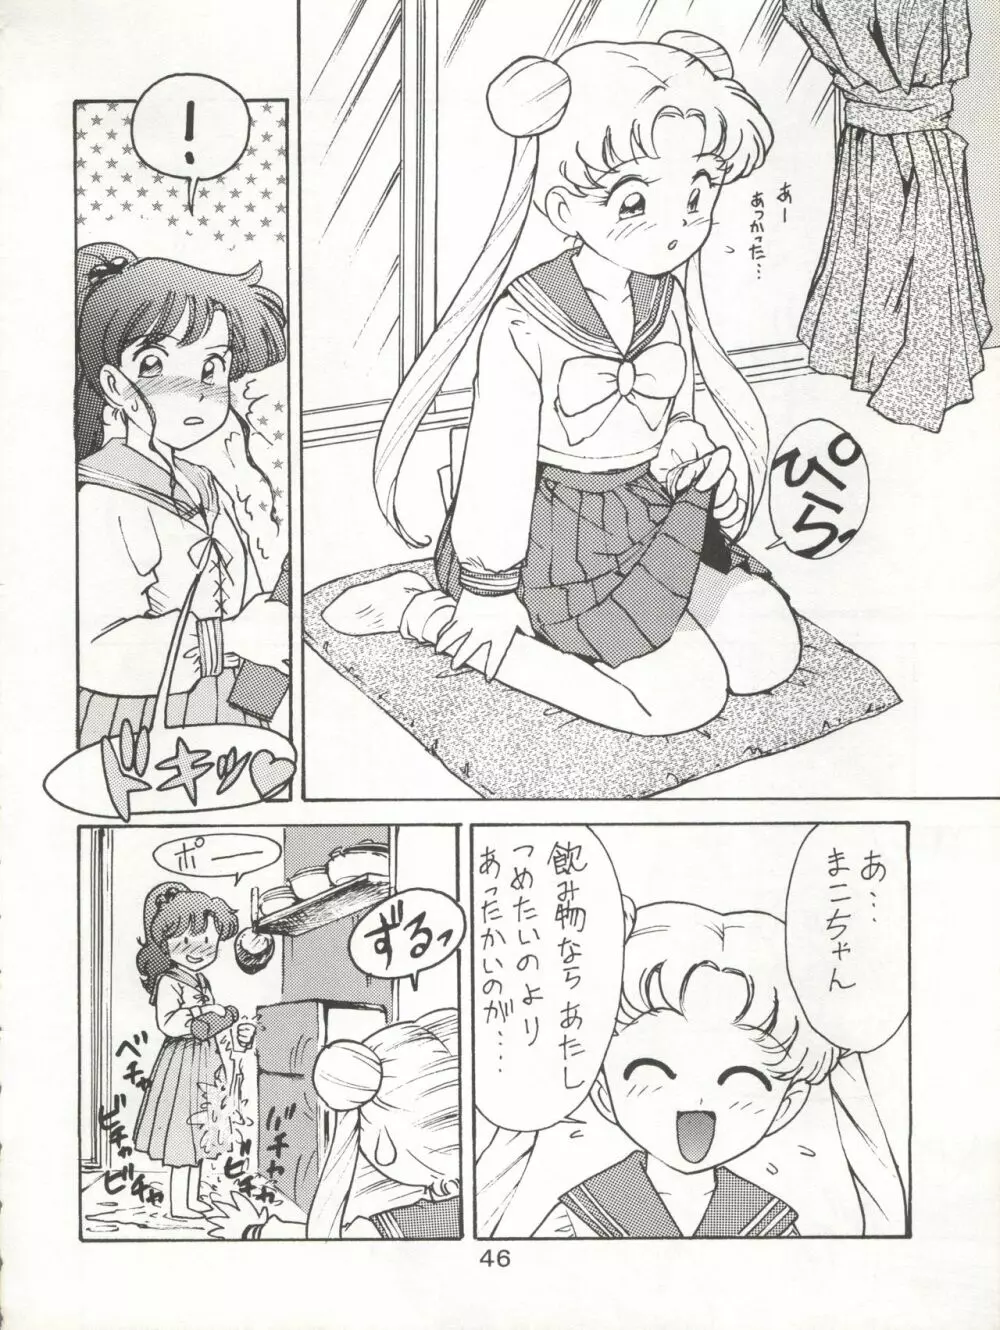 KATZE 7 上巻 - page47